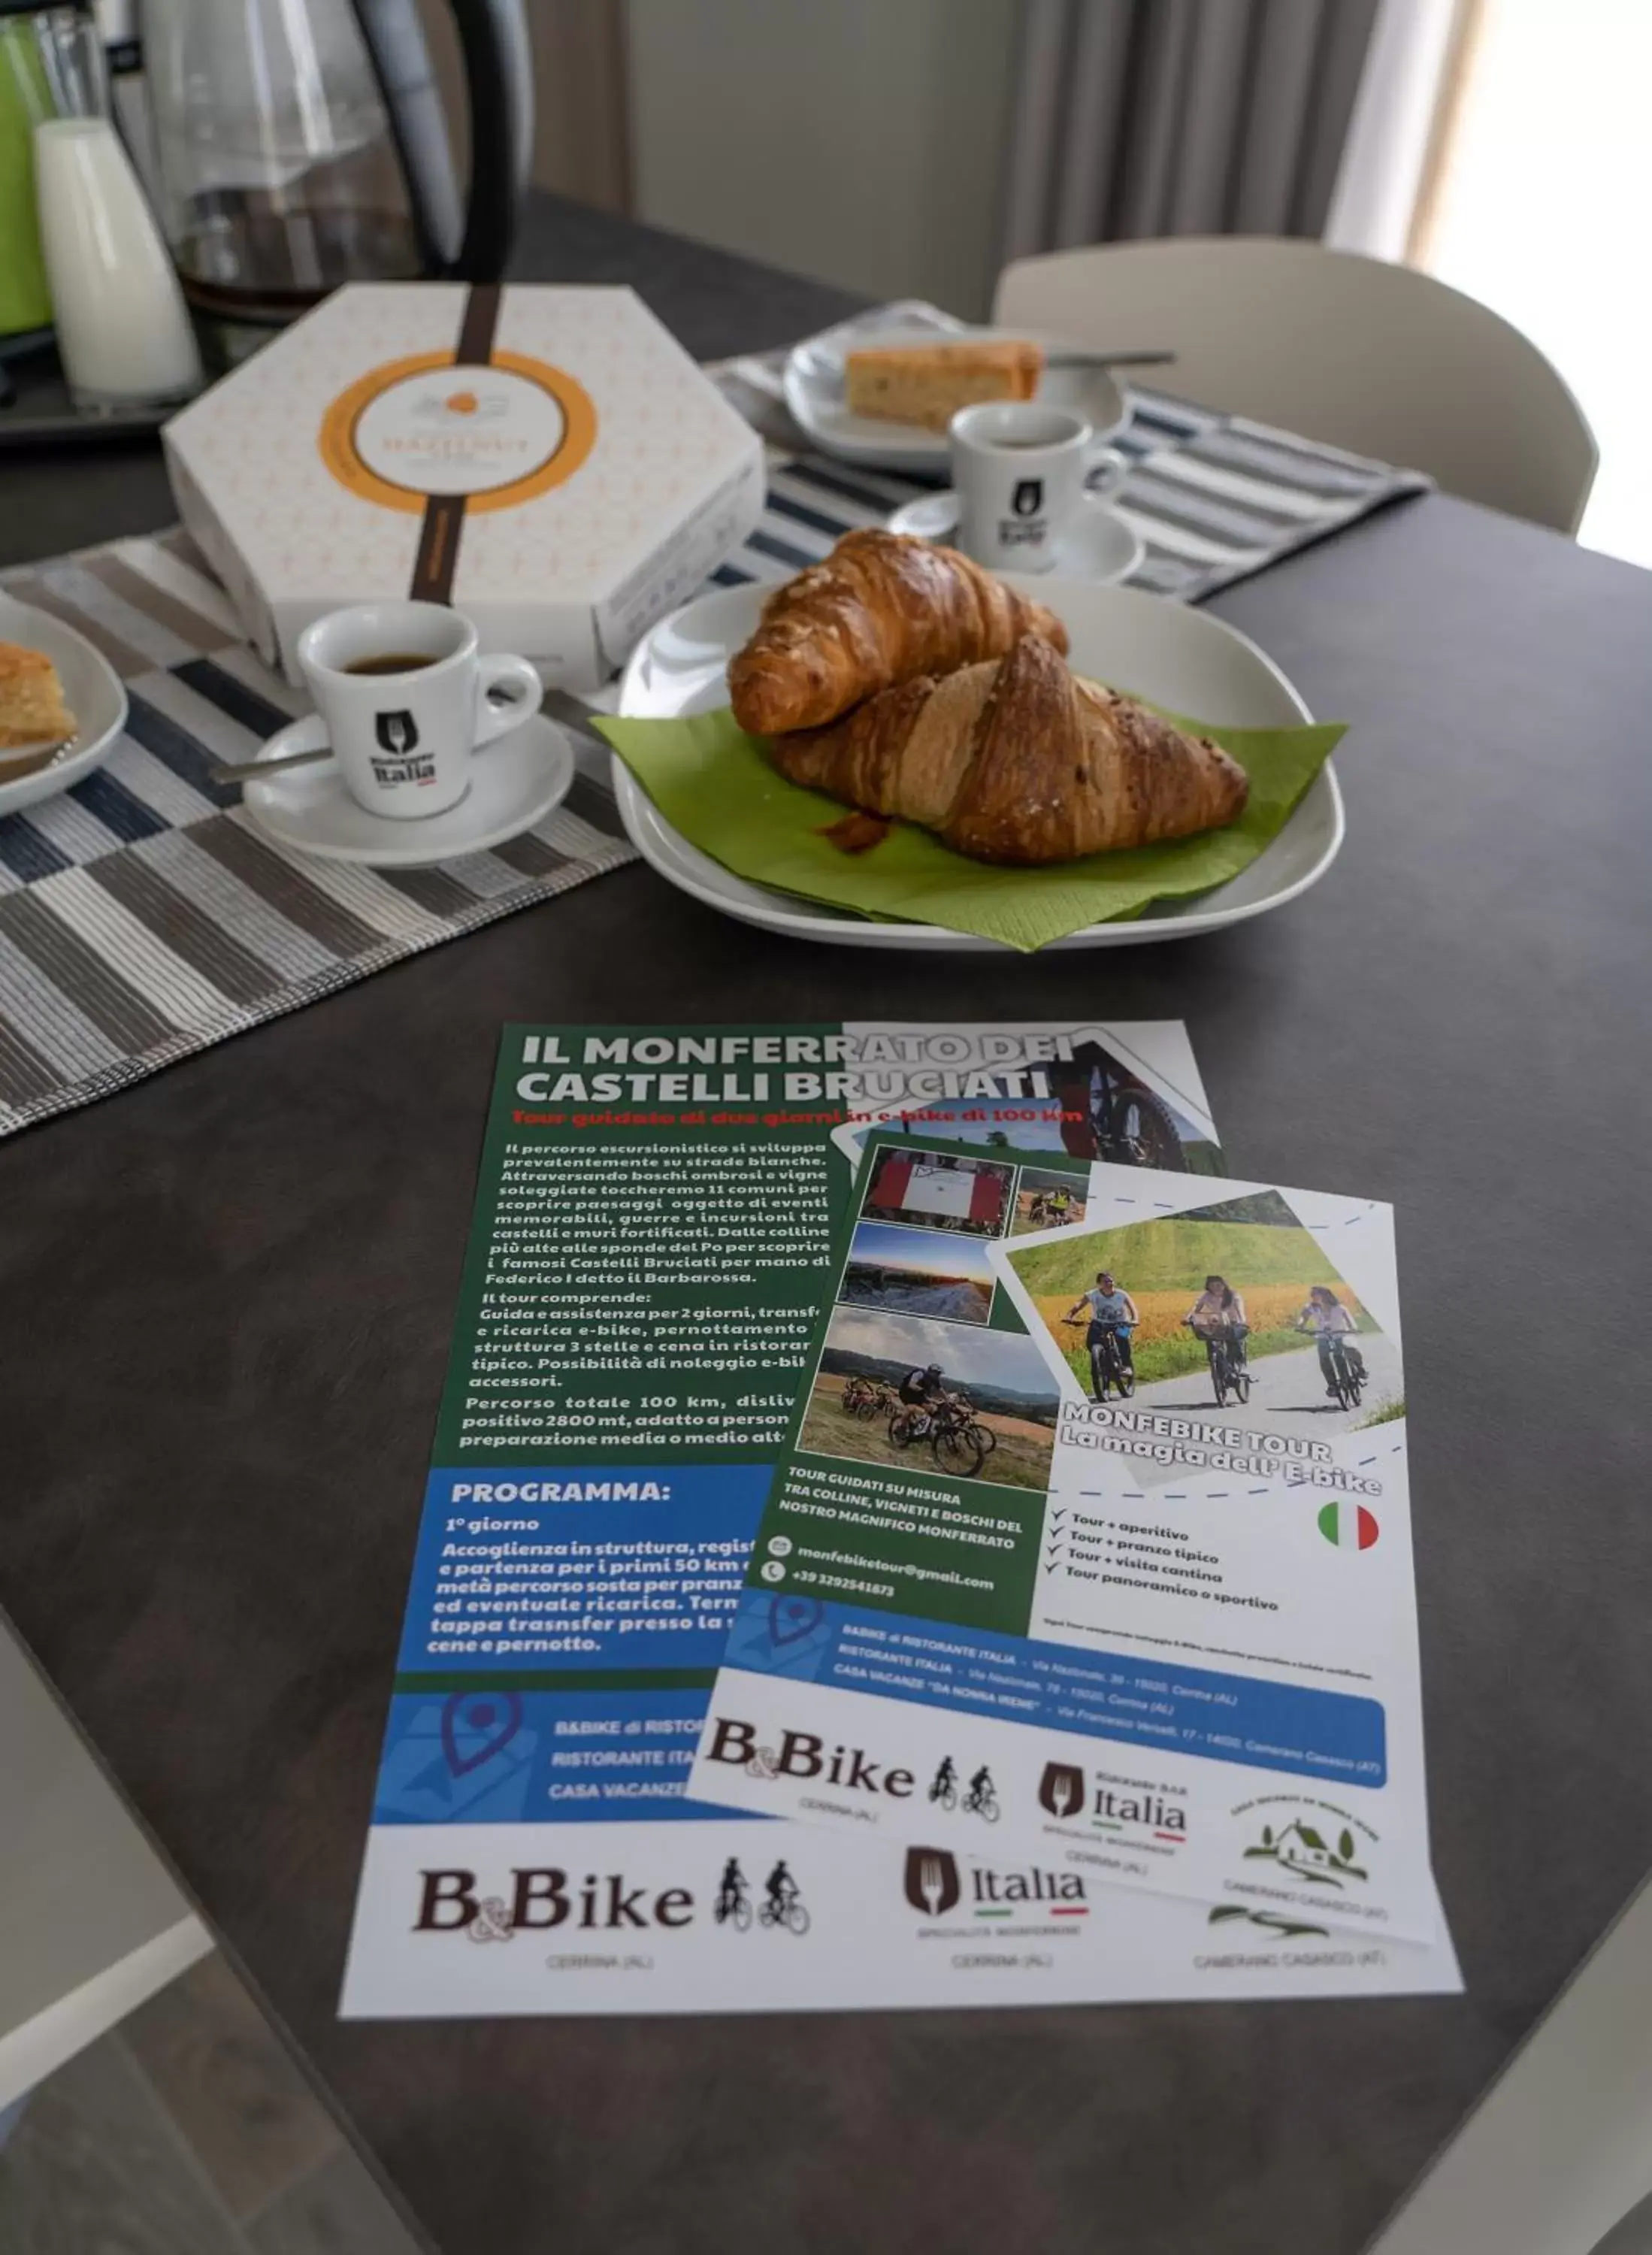 Breakfast in B & Bike di Ristorante Italia